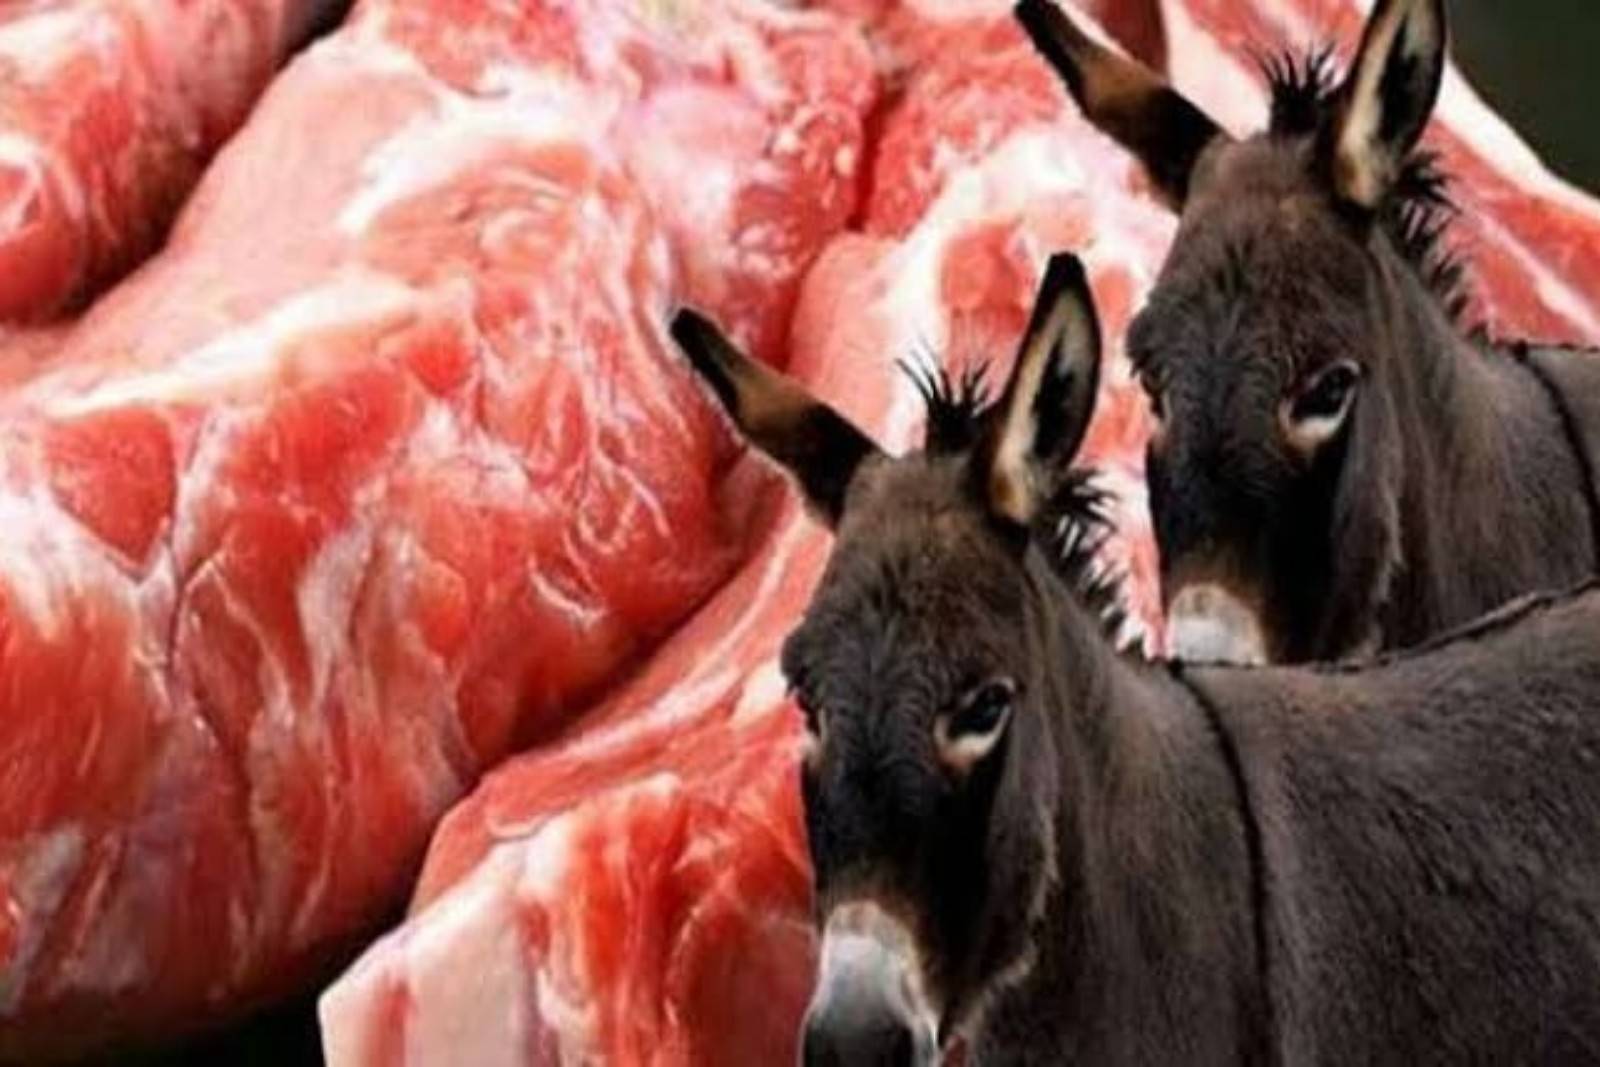 صعوبة التفريق بين لحم الحمير واللحوم الاخرى